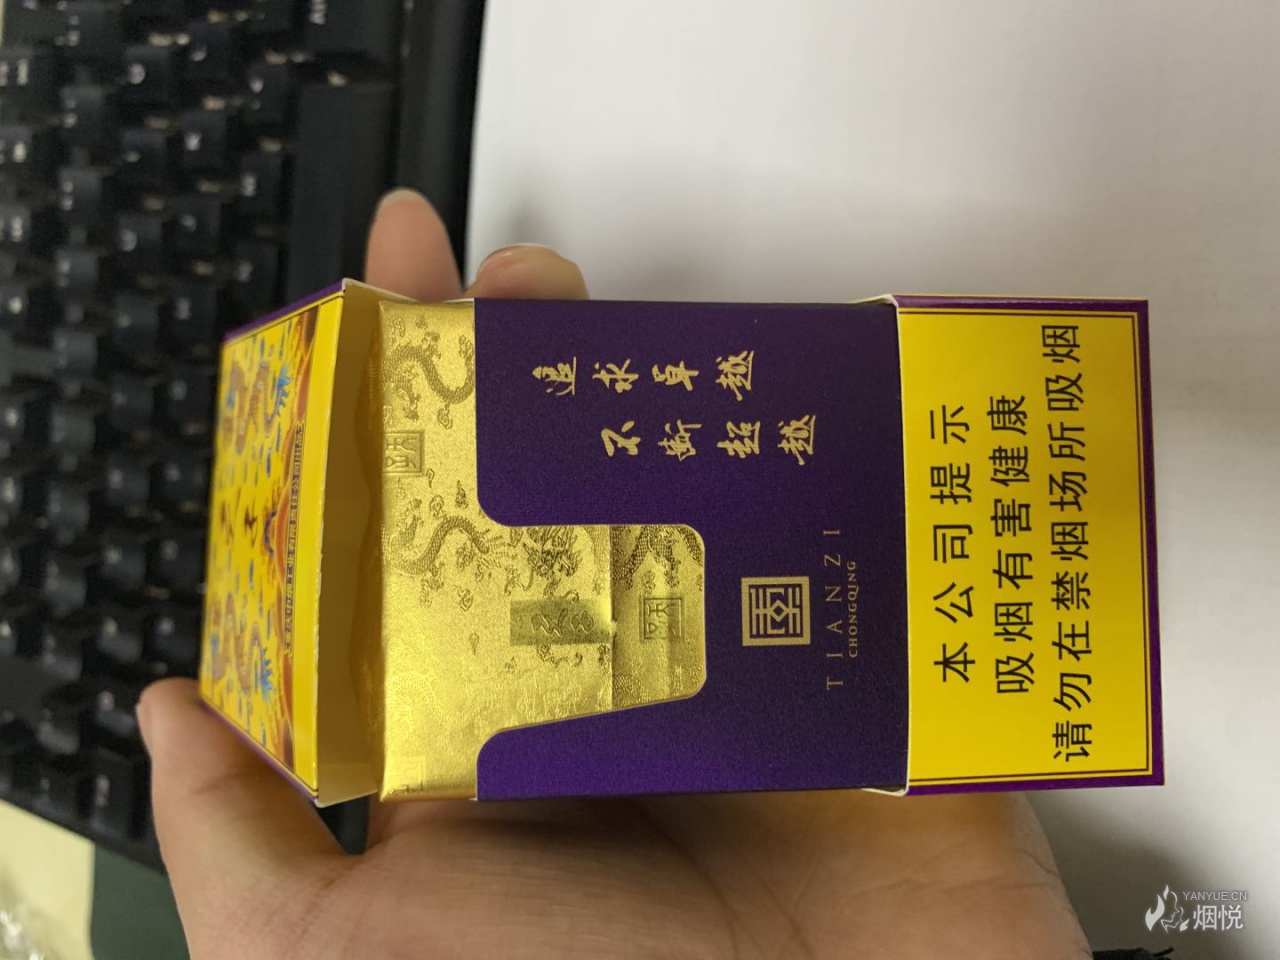 传奇天子 - 香烟品鉴 - 烟悦网论坛